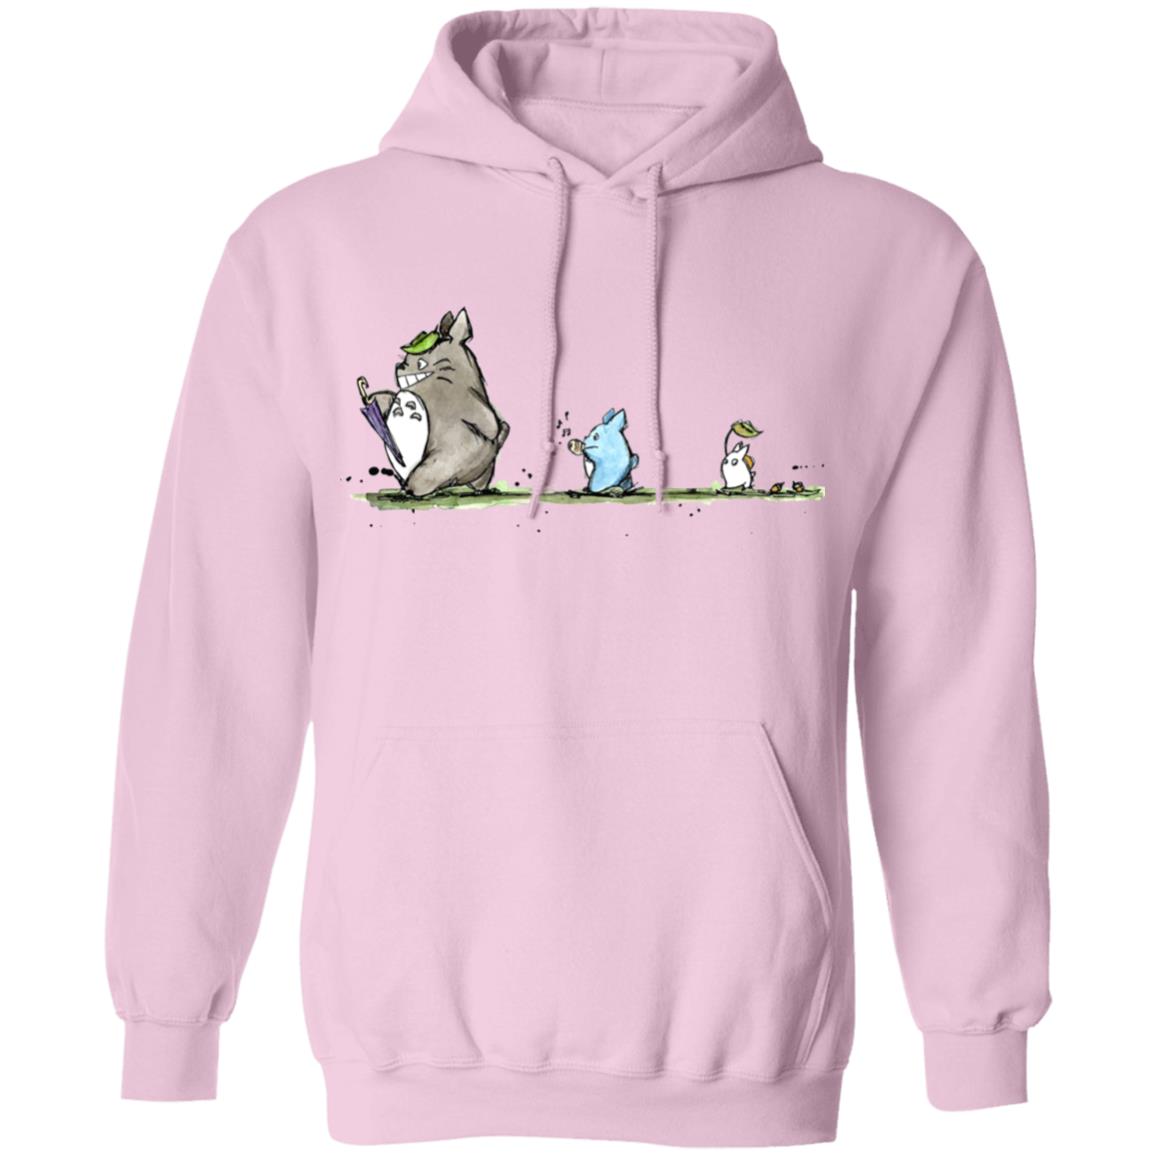 Totoro Family Parade Hoodie